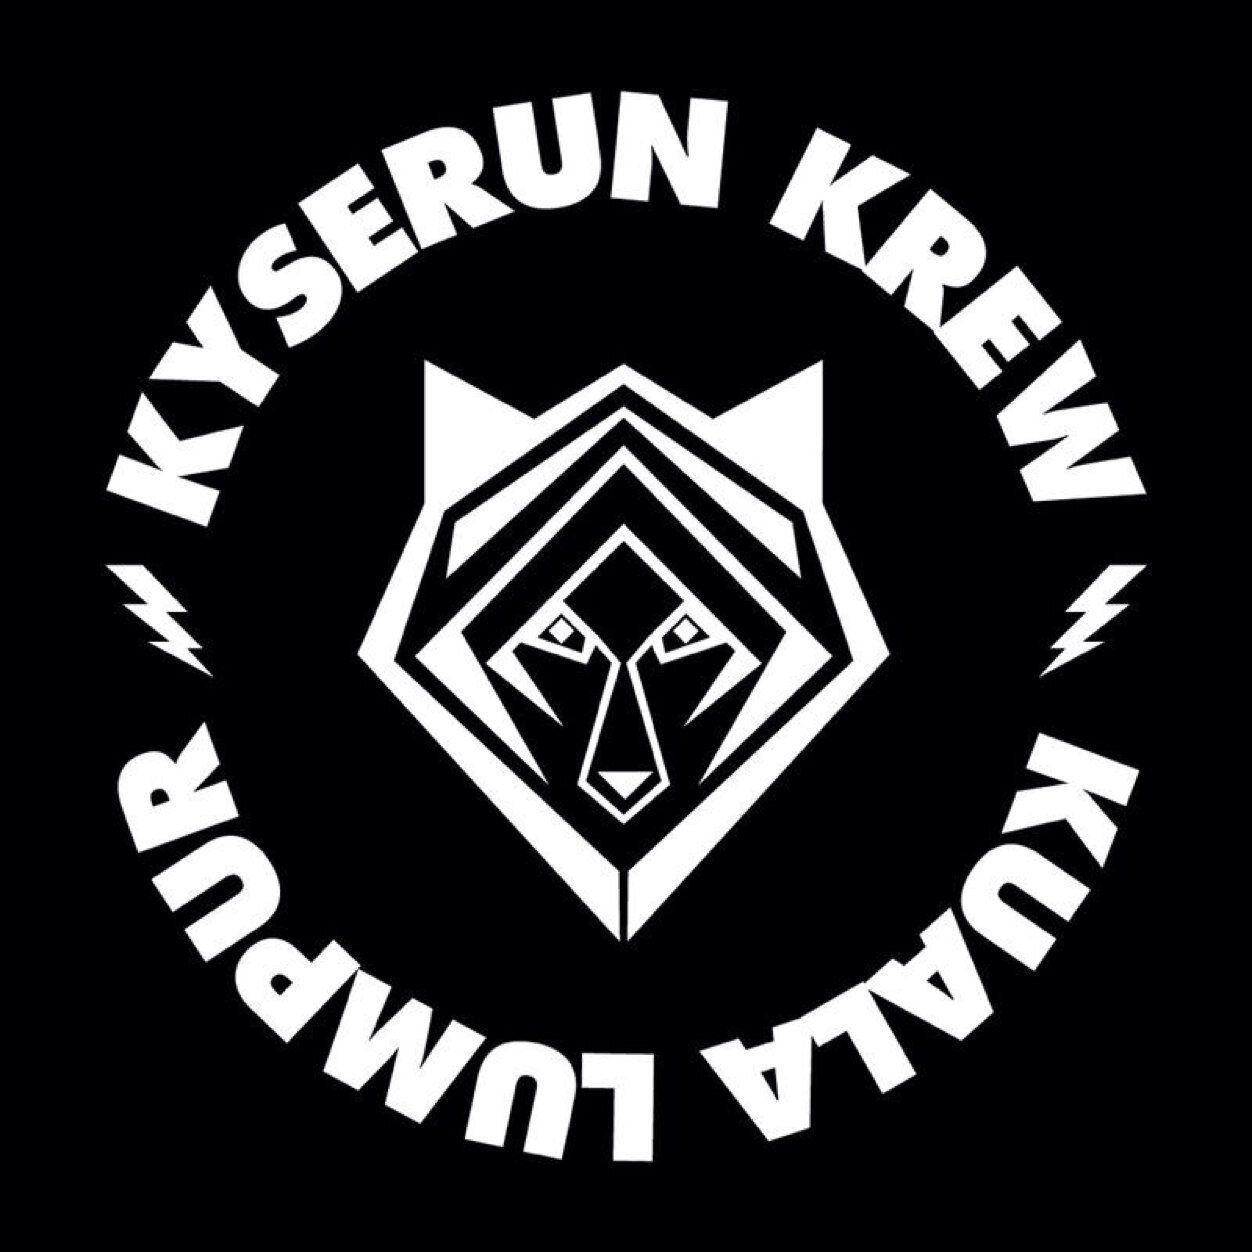 Big KR3W Logo - Kyserun Krew on Twitter: 